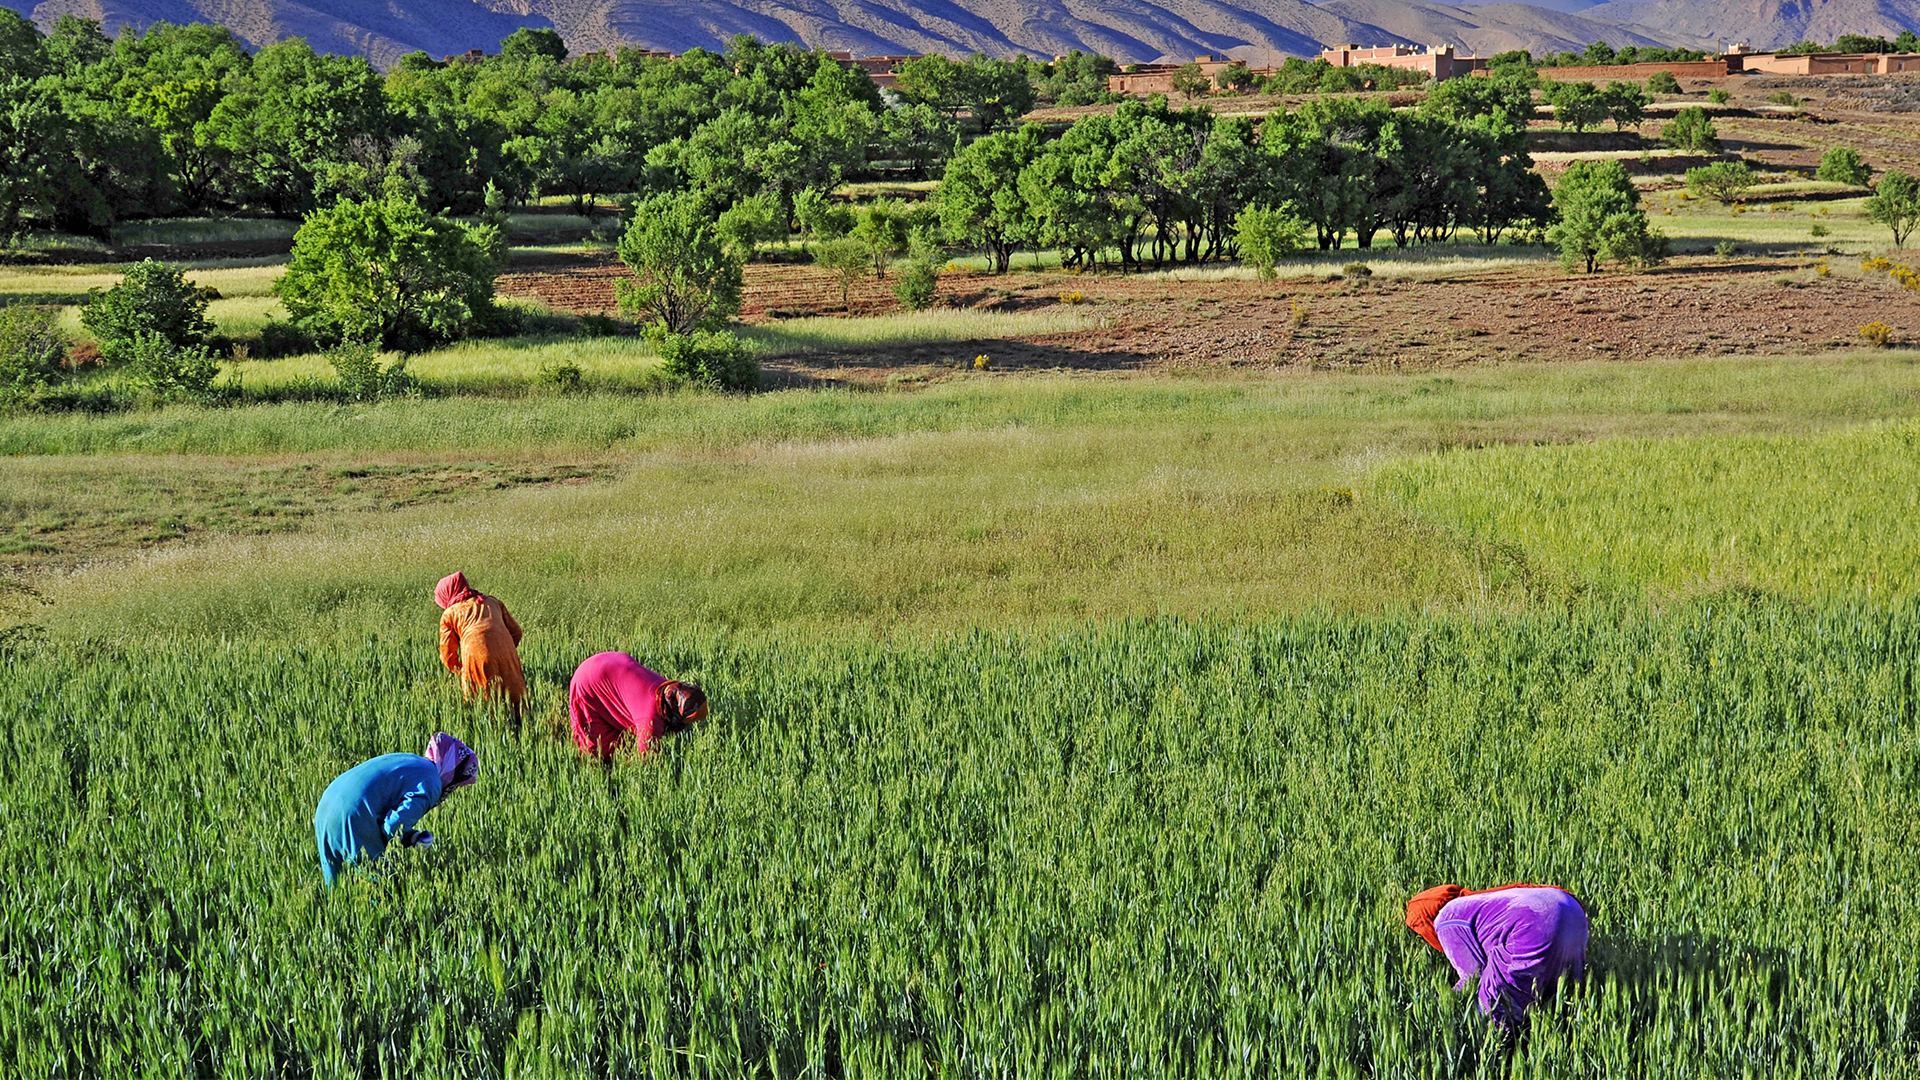 Women farming the fields in Morocco